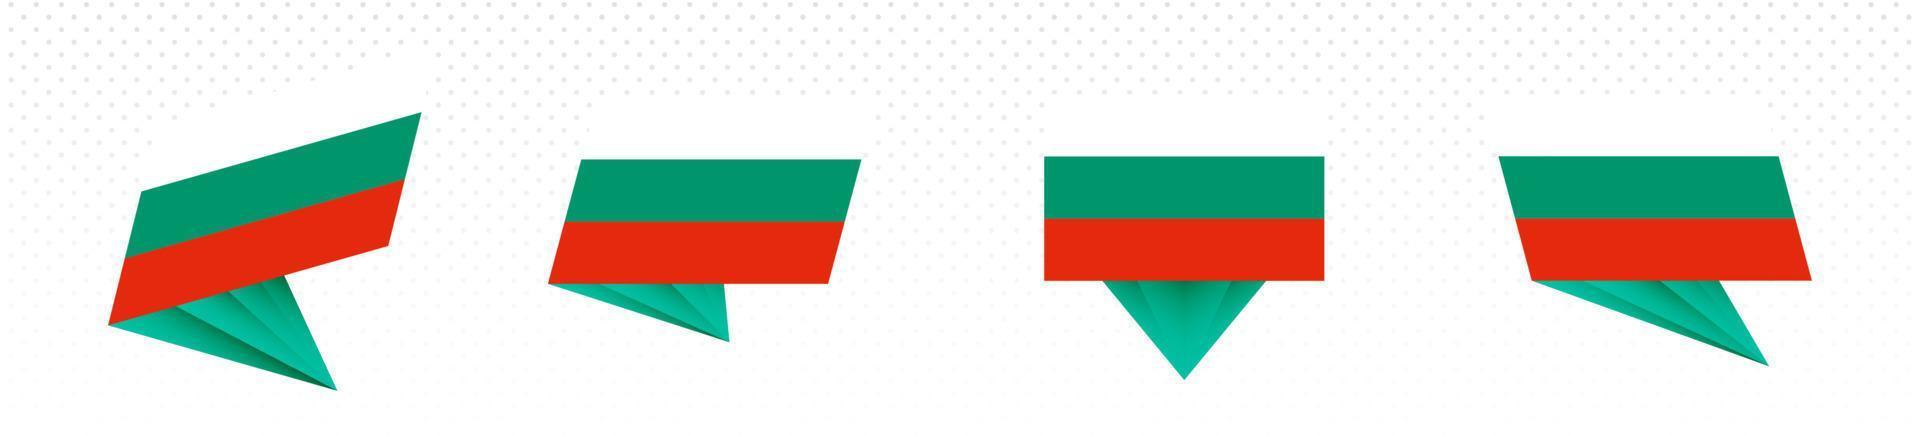 drapeau de la bulgarie au design abstrait moderne, jeu de drapeaux. vecteur